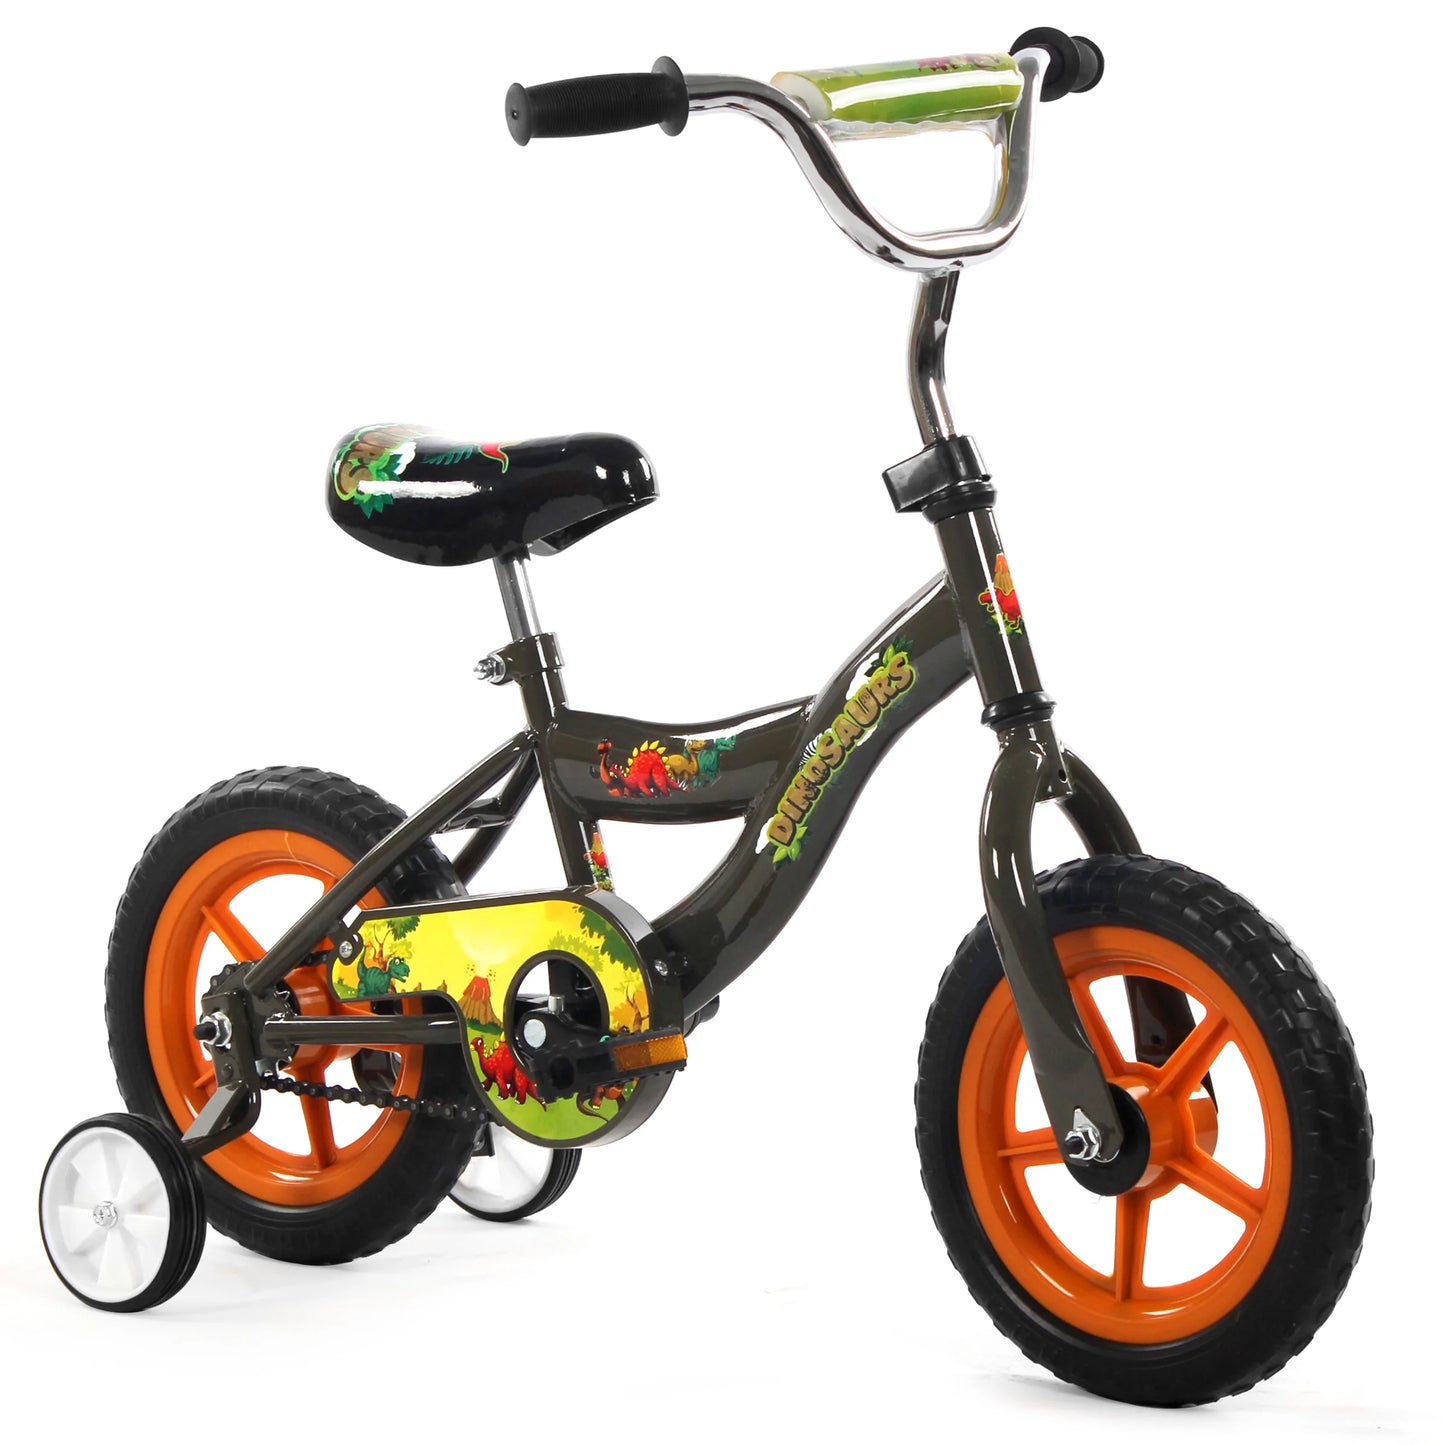 ISD Kids - Boys - 12" Dino Army | Bike Lover USA